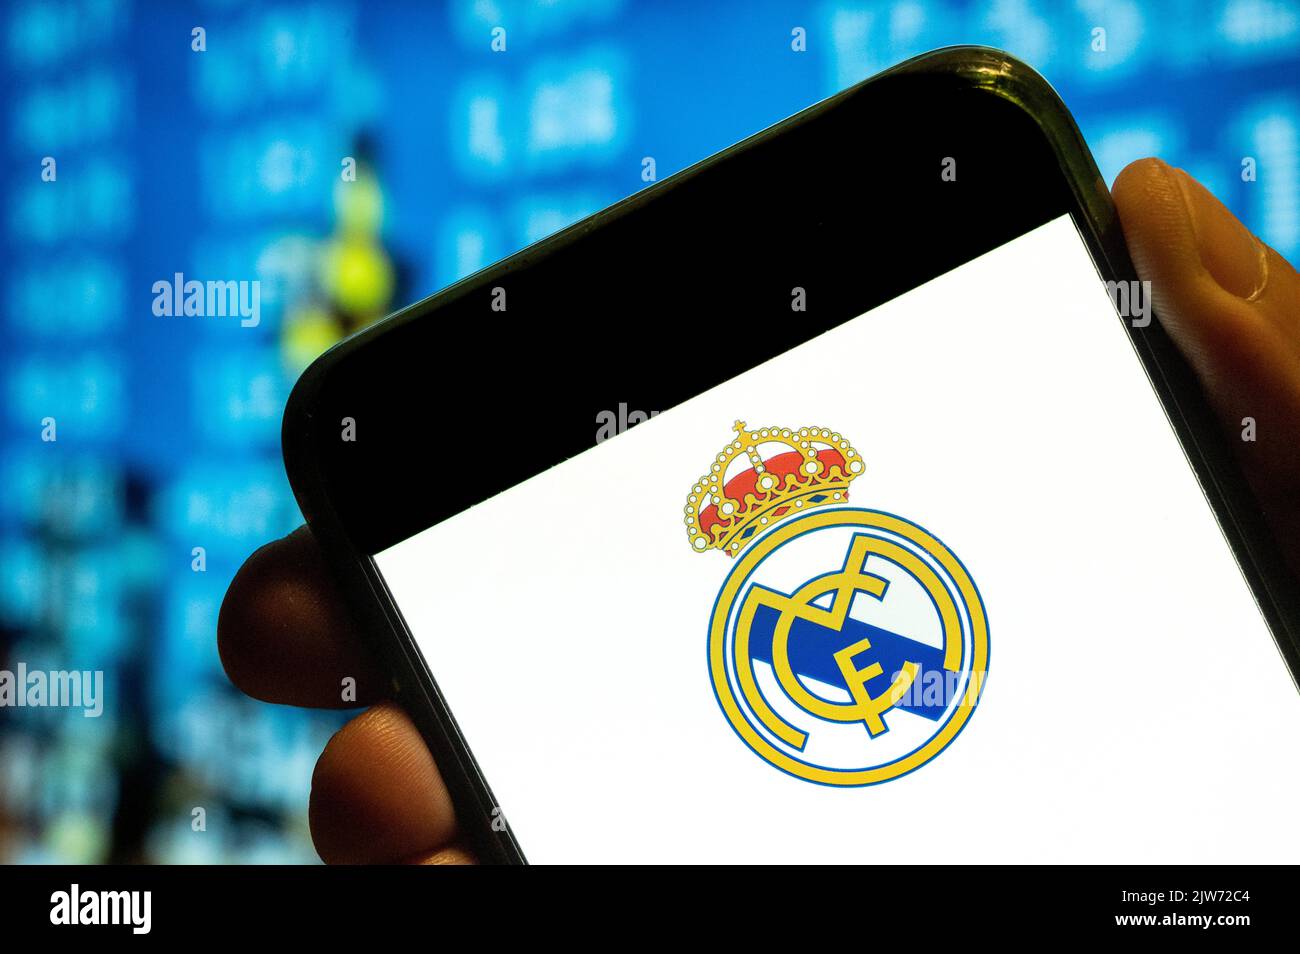 Cina. 25th luglio, 2022. In questa foto, la squadra di calcio professionistica spagnola Real Madrid Club de FÃºtbol, comunemente nota come logo Real Madrid, viene visualizzata sullo schermo di uno smartphone. (Credit Image: © Budrul Chukrut/SOPA Images via ZUMA Press Wire) Foto Stock